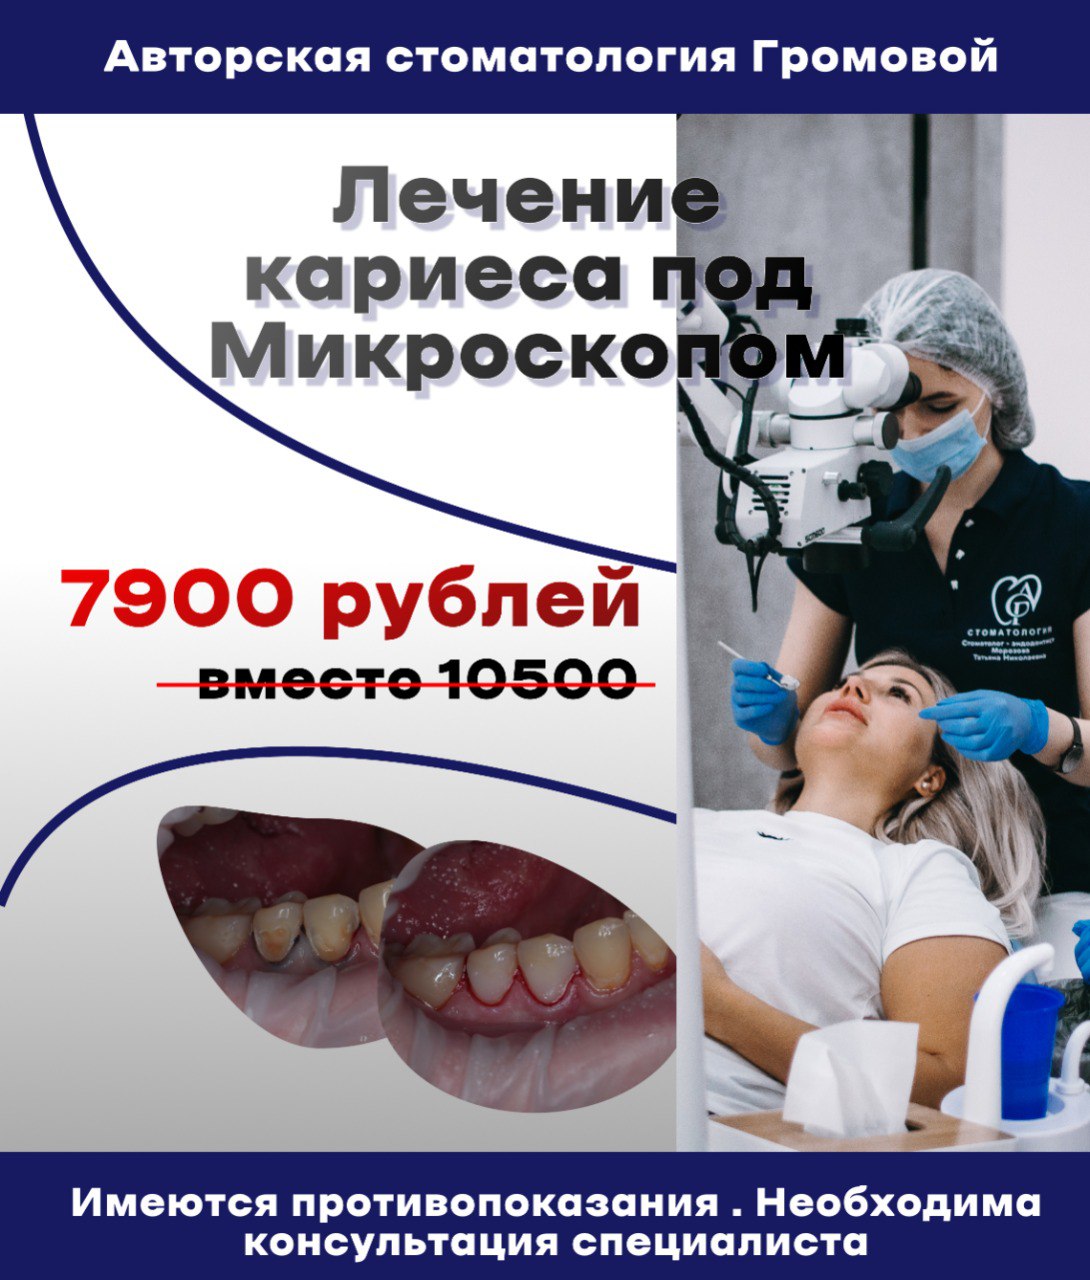 Акции клиники Авторская Стоматология Громовой